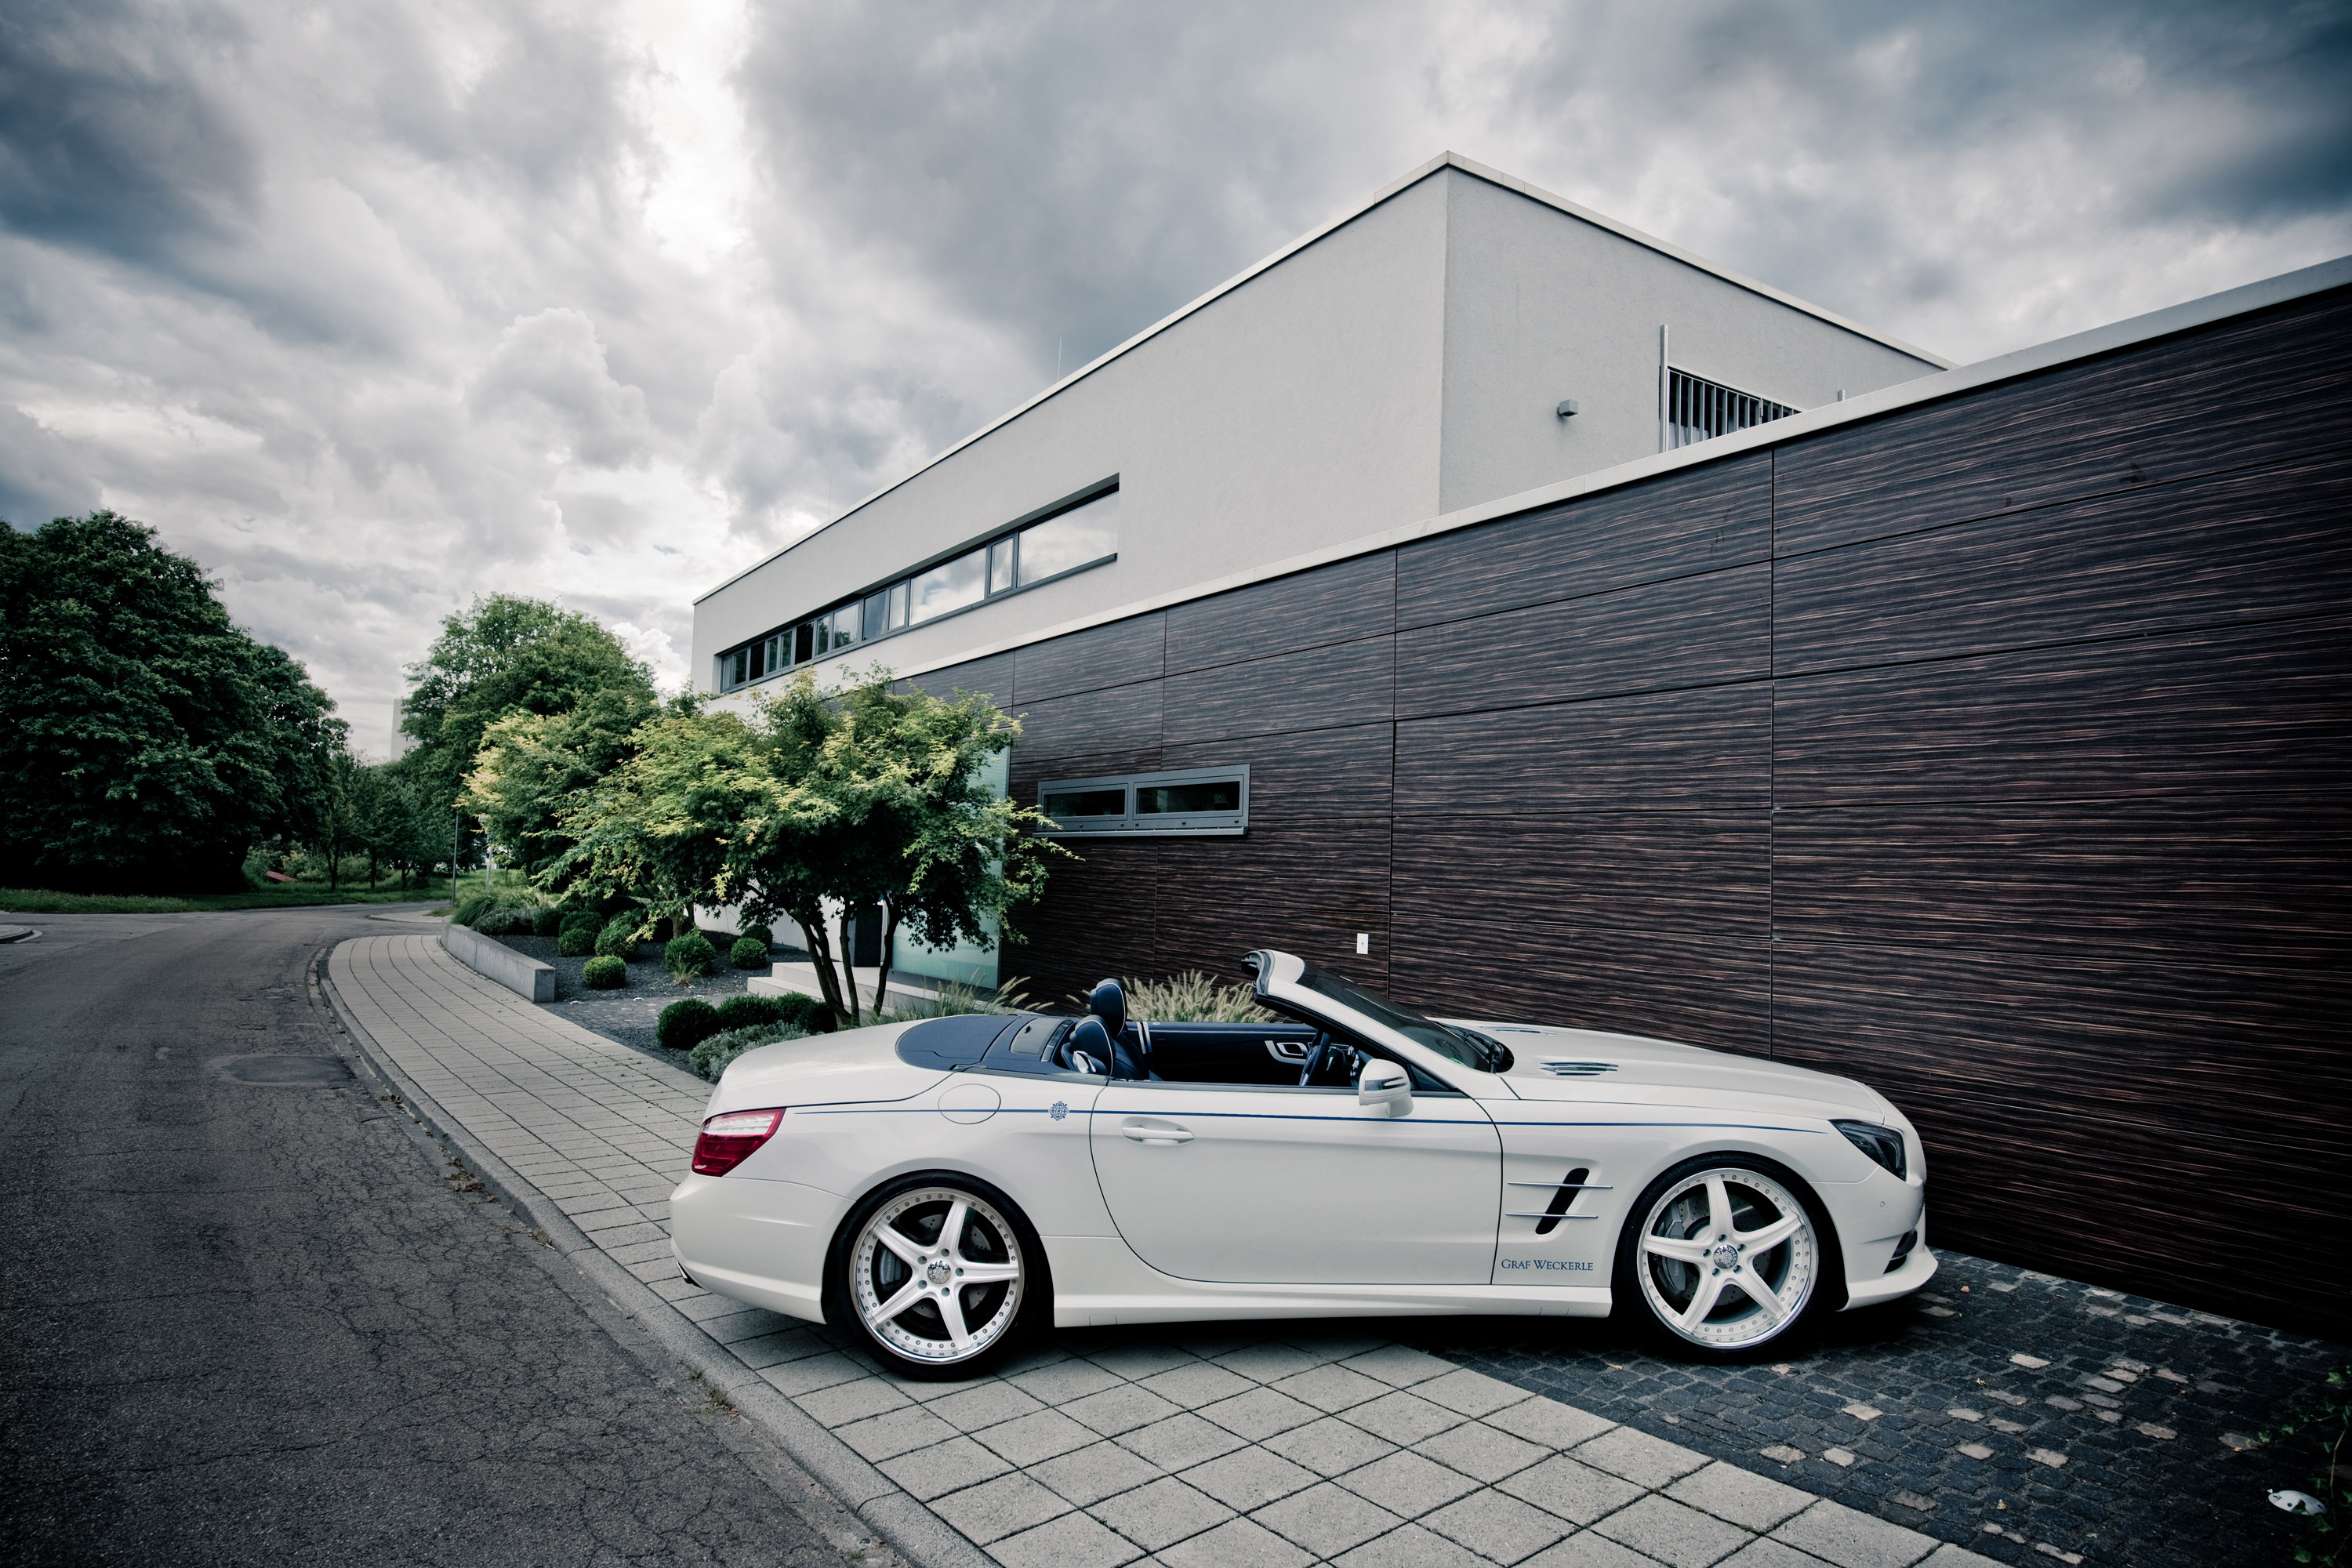 2012, Graf, Weckerle, Mercedes, Benz, Sl 500, Tuning, 500 Wallpaper